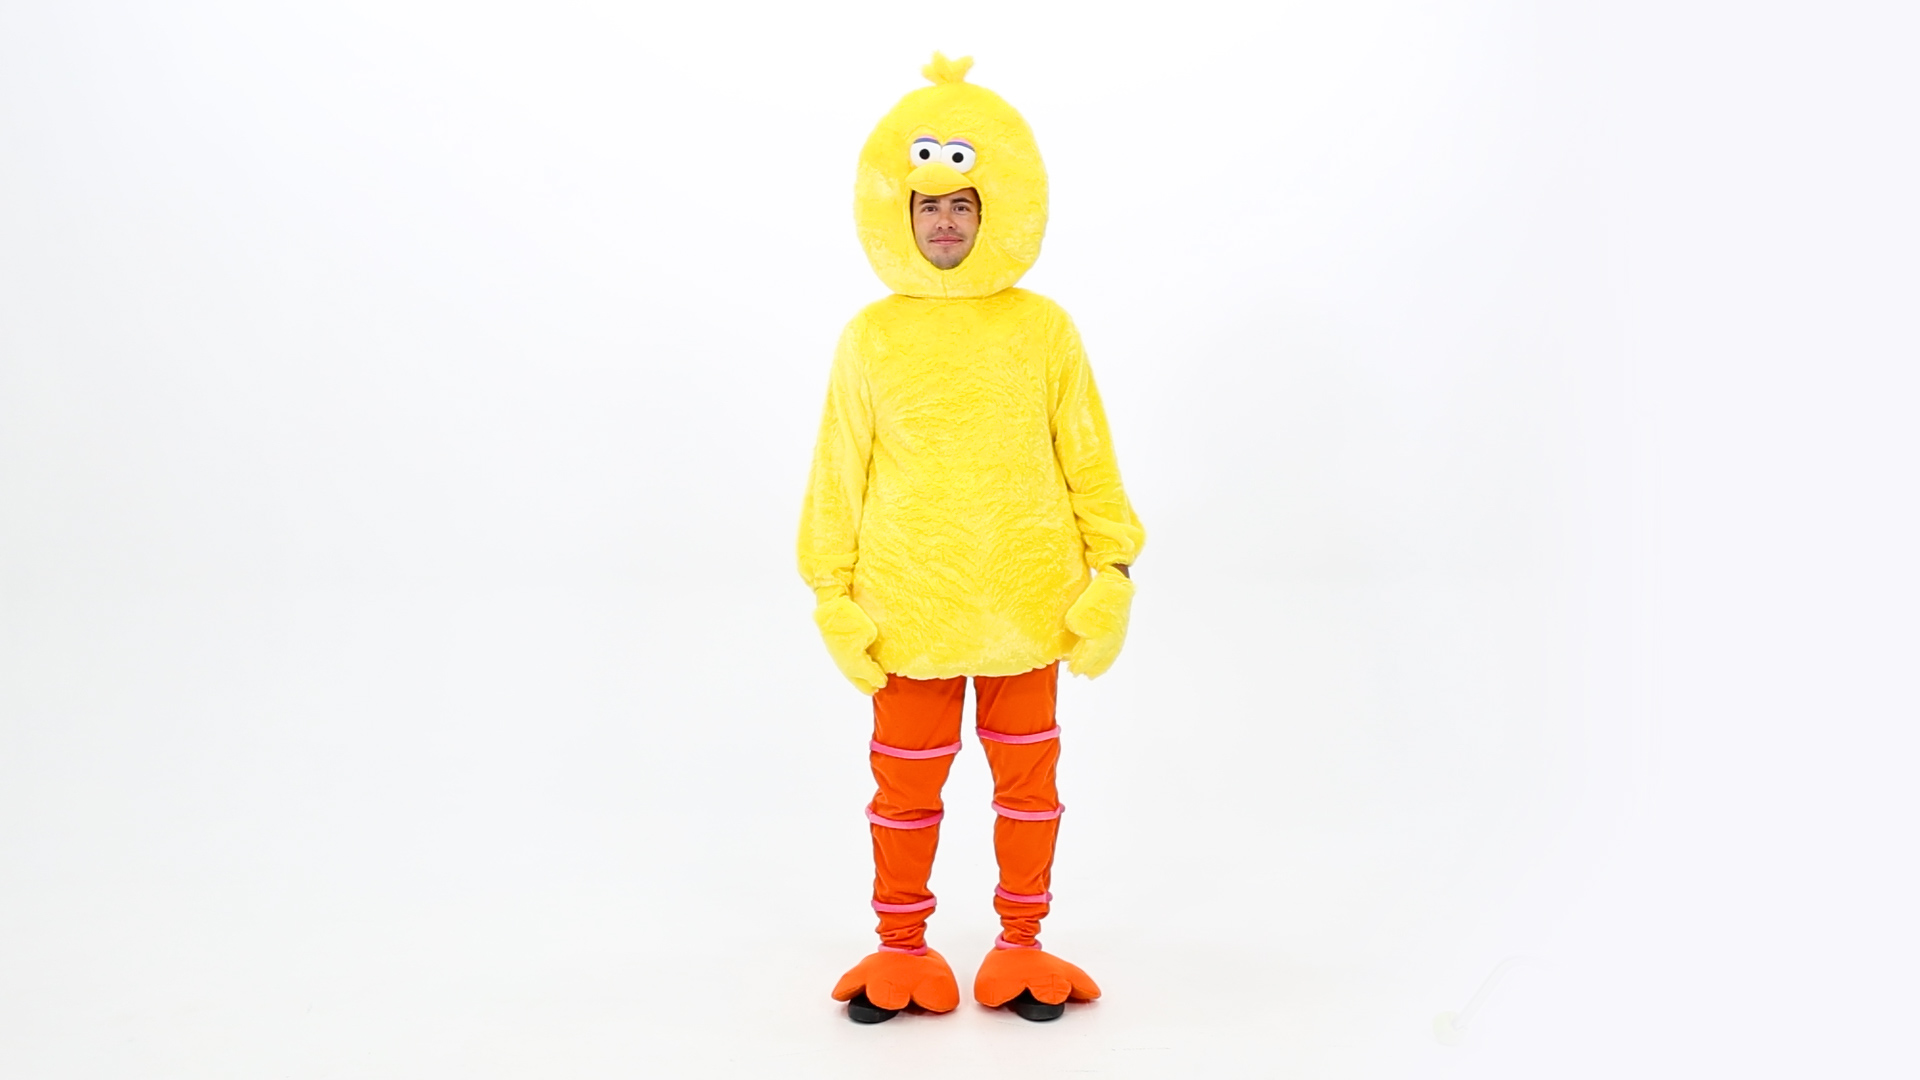 FUN2561AD Sesame Street Big Bird Costume for Adults